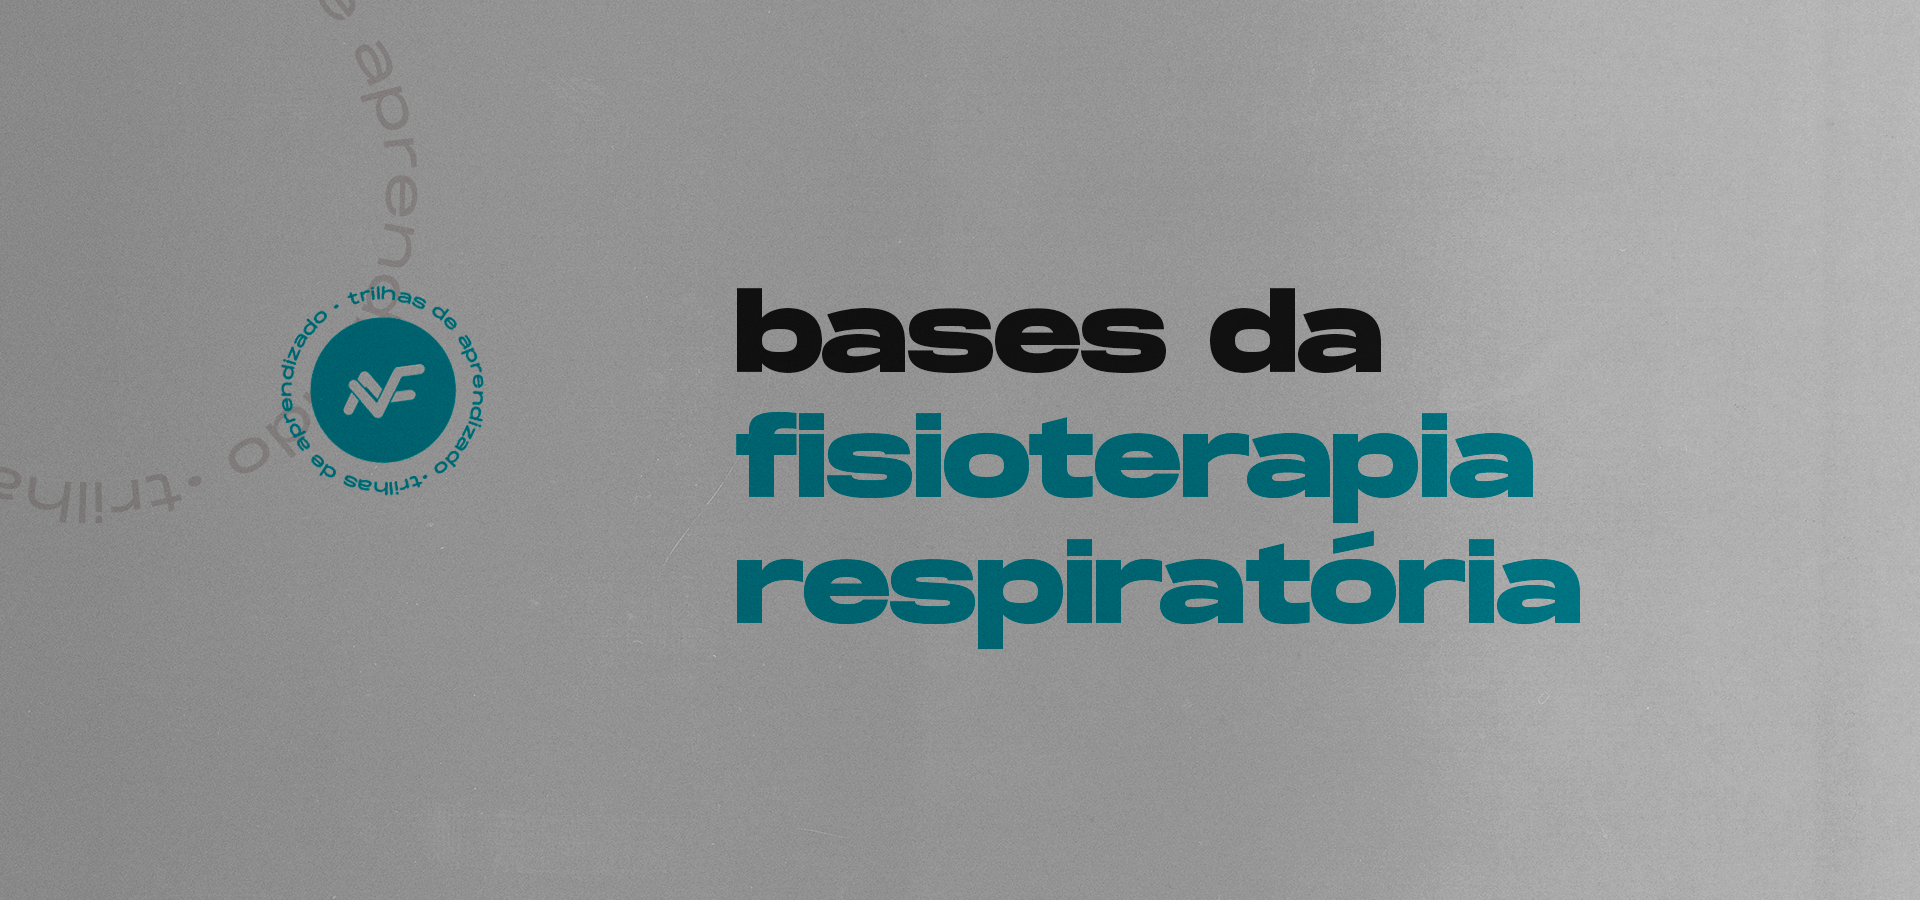 Bases da fisioterapia respiratória